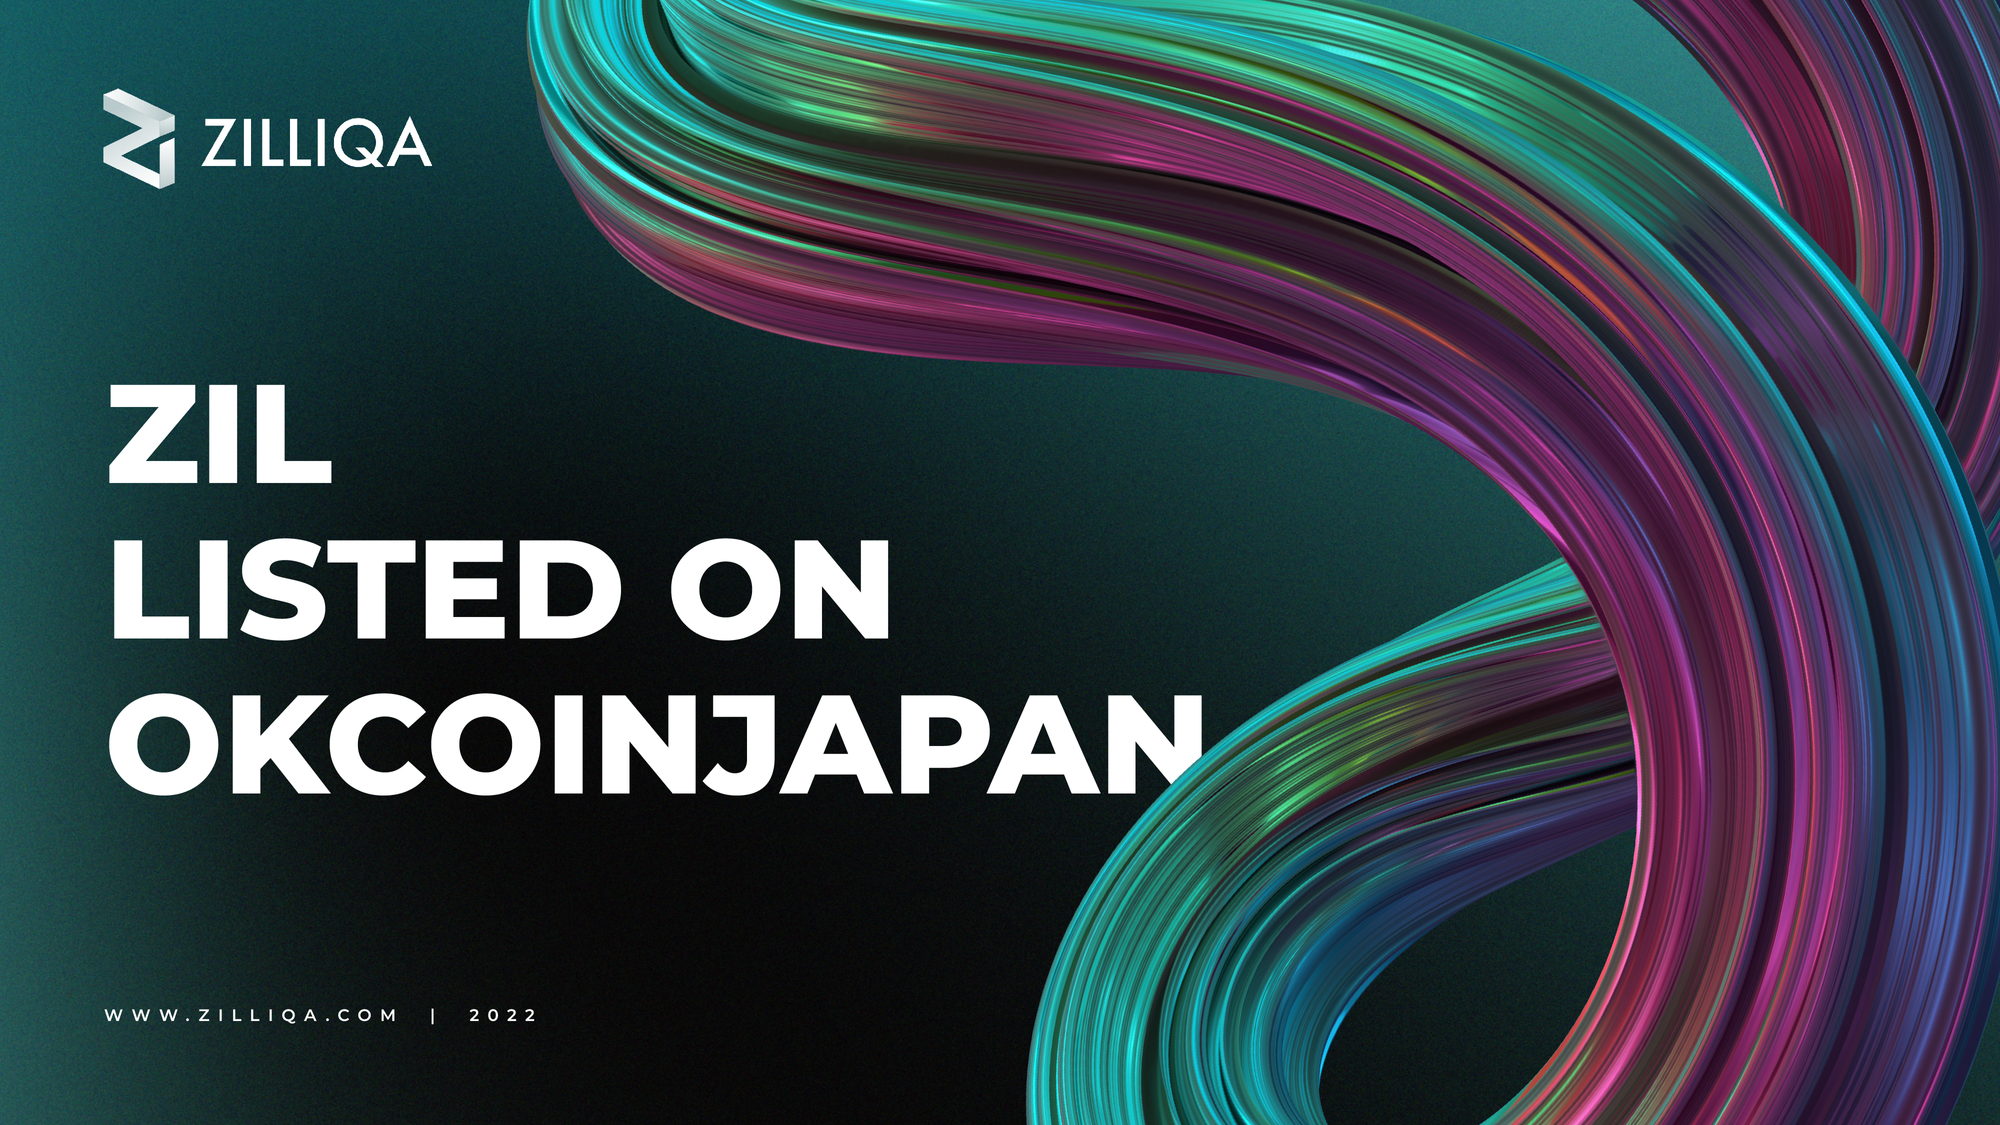 Press Release: Zilliqa (ZIL) listed on OKCoin Japan